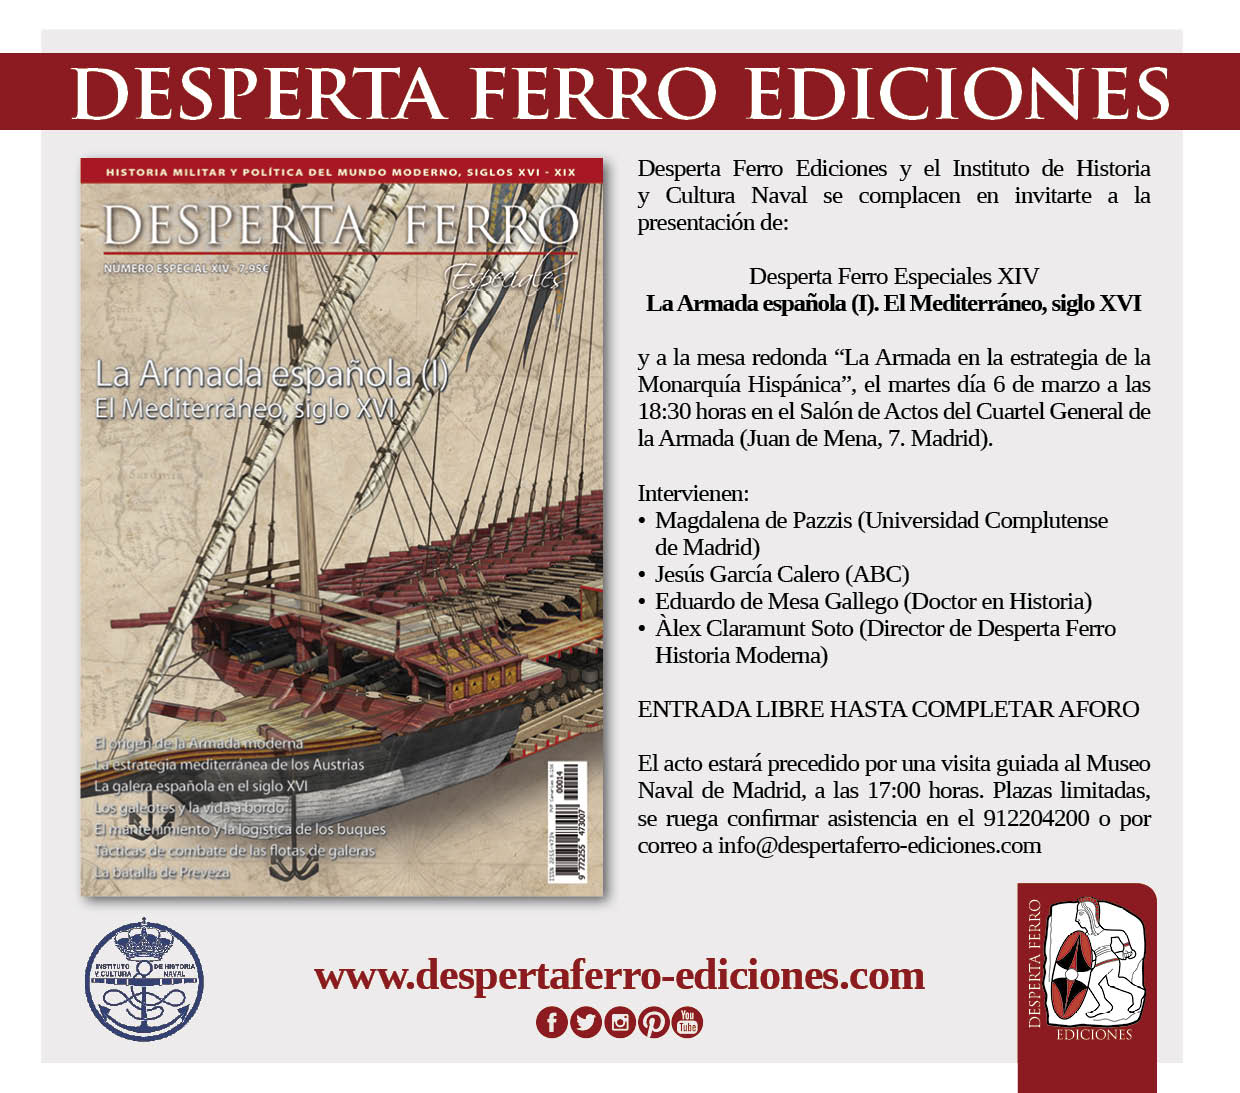 Presentación de La Armada española en el Mediterráneo, siglo XVI